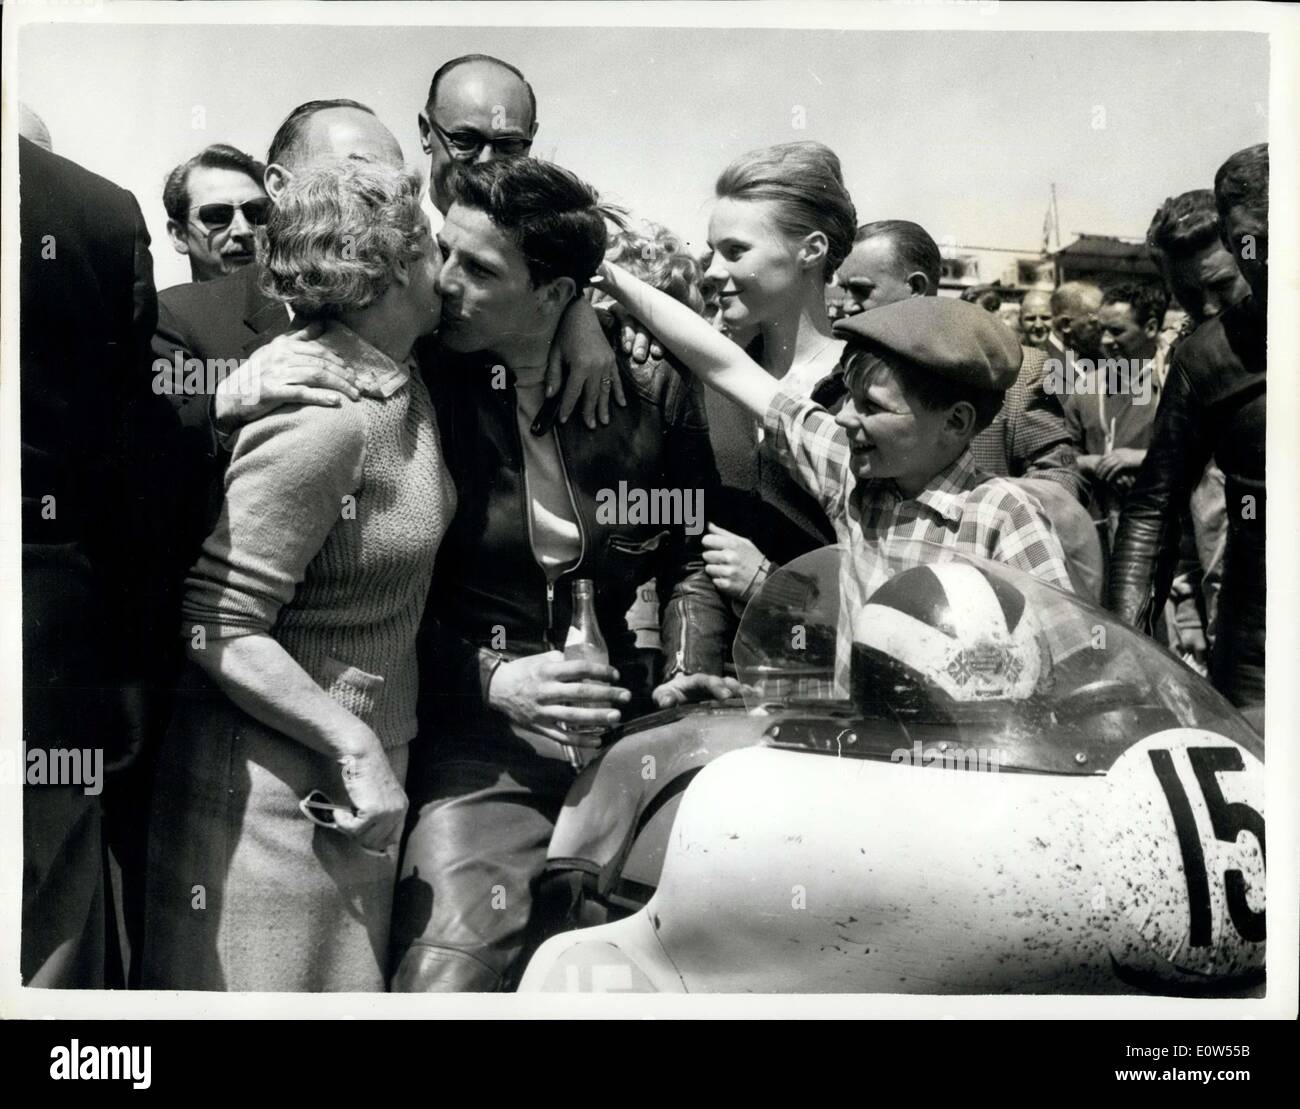 Giugno 15, 1961 - Phil Read vince T.T. gara: 22 anno vecchio Phil Read, un ingegnere di Luton, letti, ieri ha vinto la Junior TT sul Foto Stock